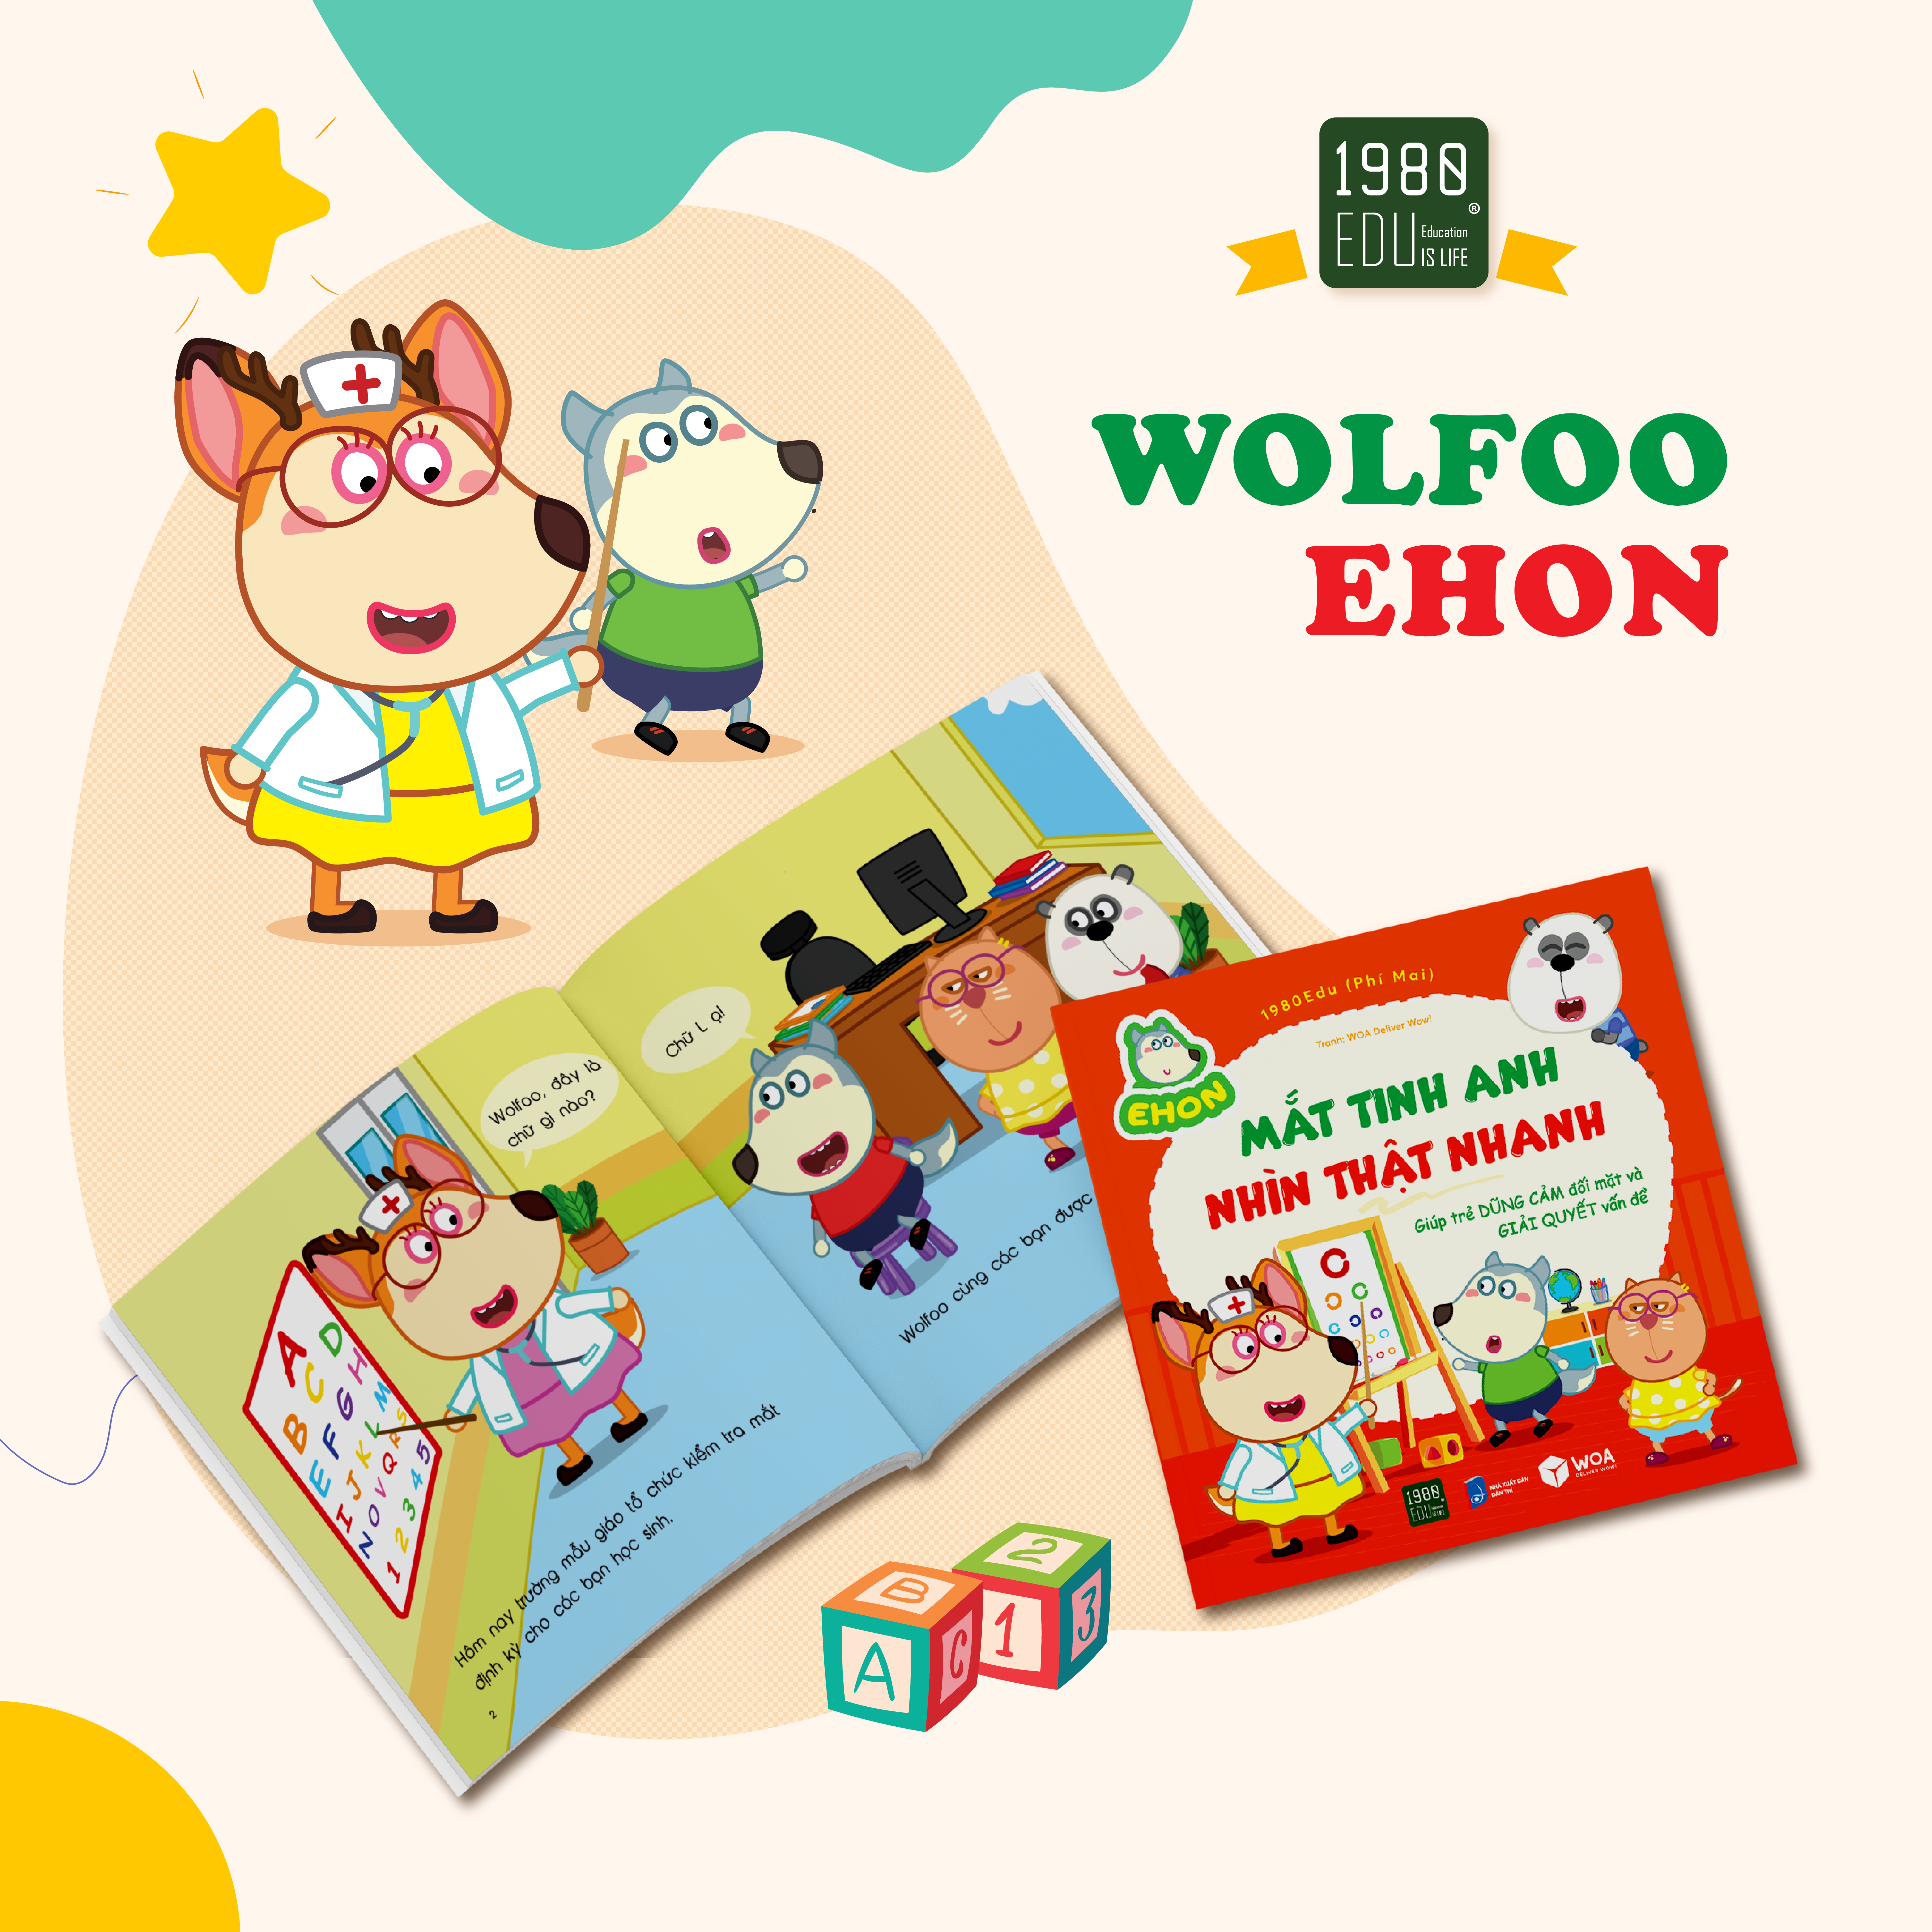 Wolfoo Ehon - Mắt Tinh Anh, Nhìn Thật Nhanh